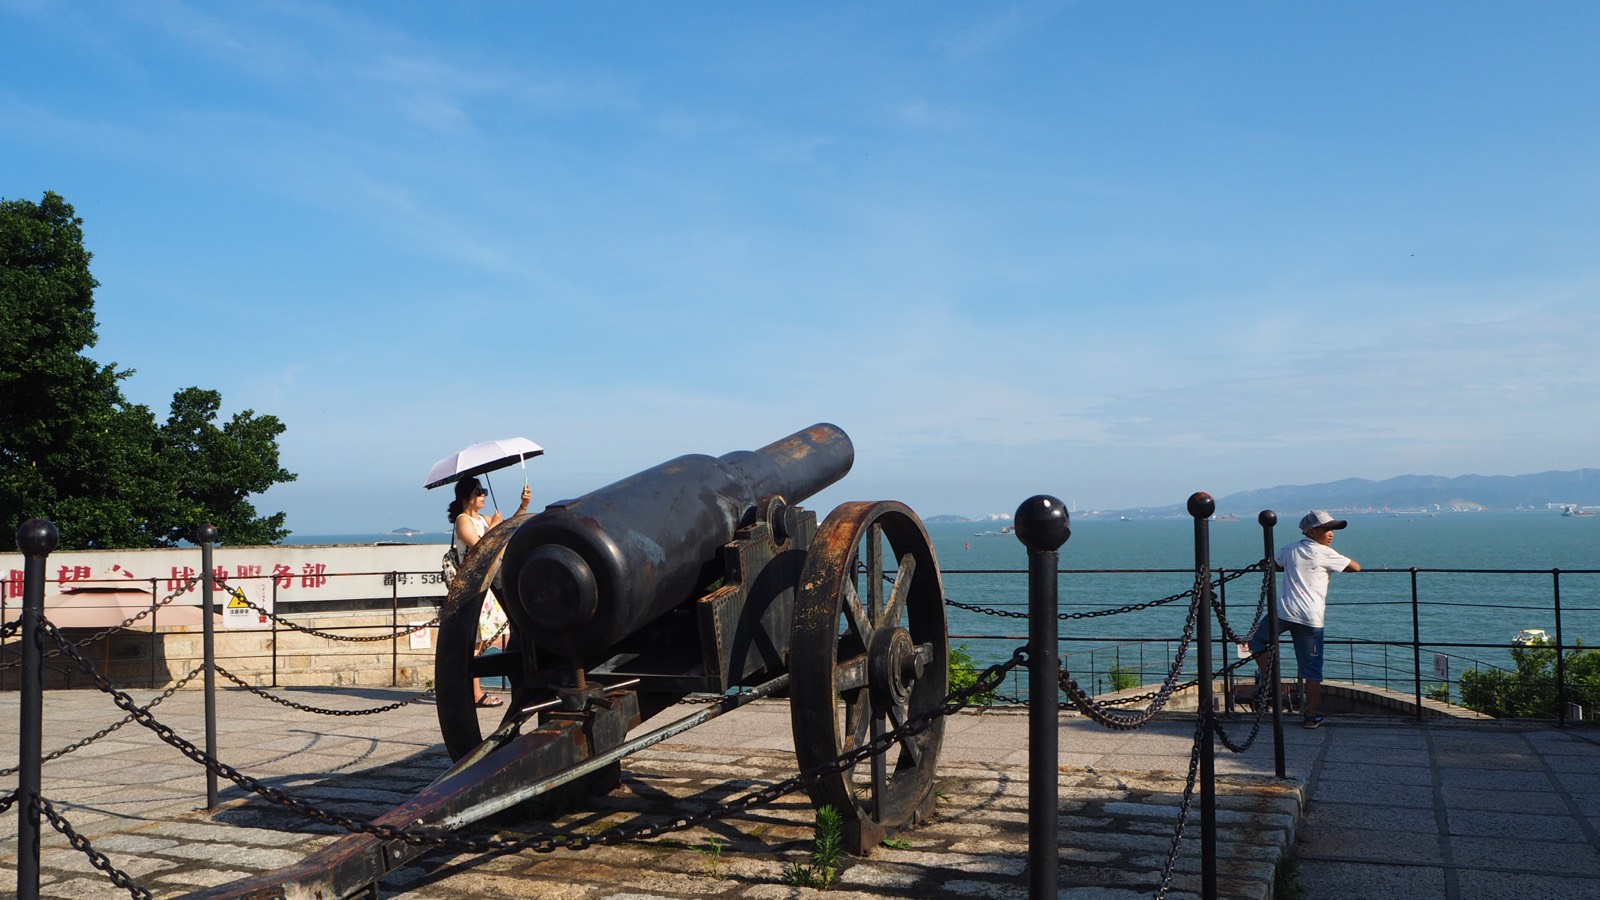 胡里山炮台就在环岛路的一端，离着白城沙滩很近。最大特色就是炮，在各种中